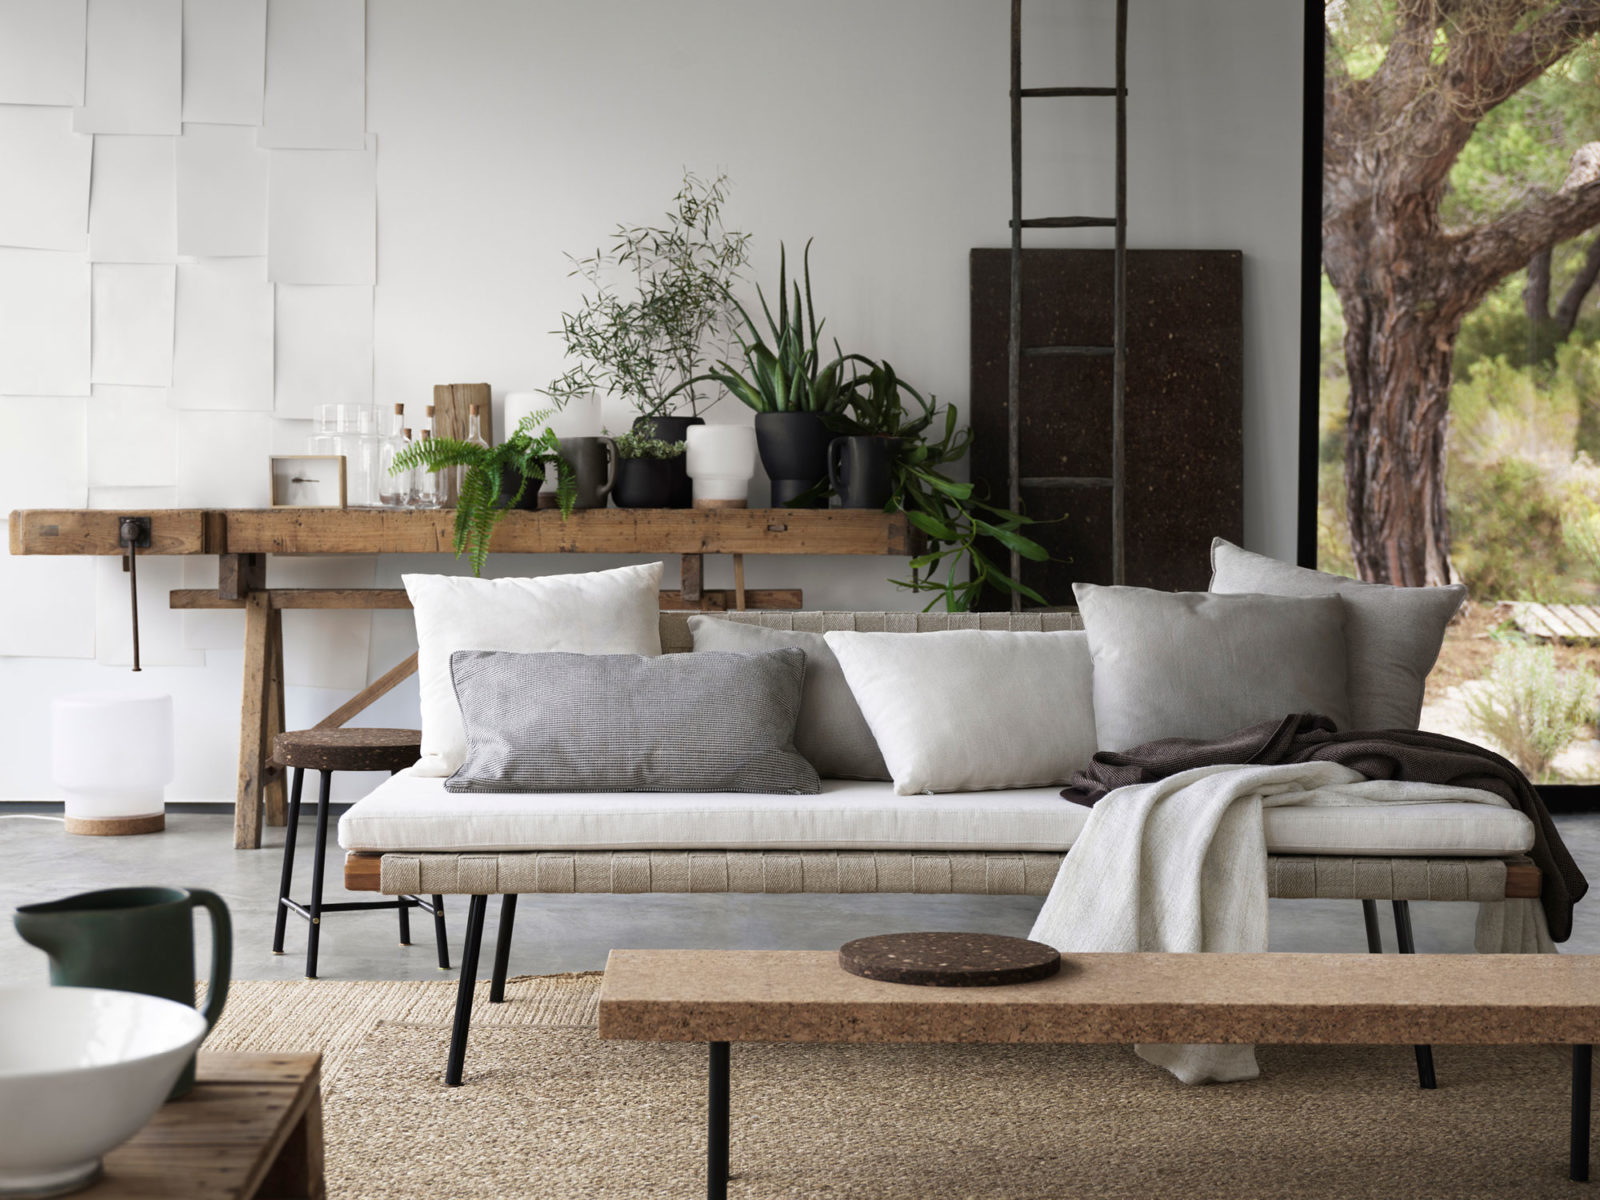 Interiör med gröna växter, soffa, pallar, bord, bänk i naturmaterial som kork, trä och bambu.